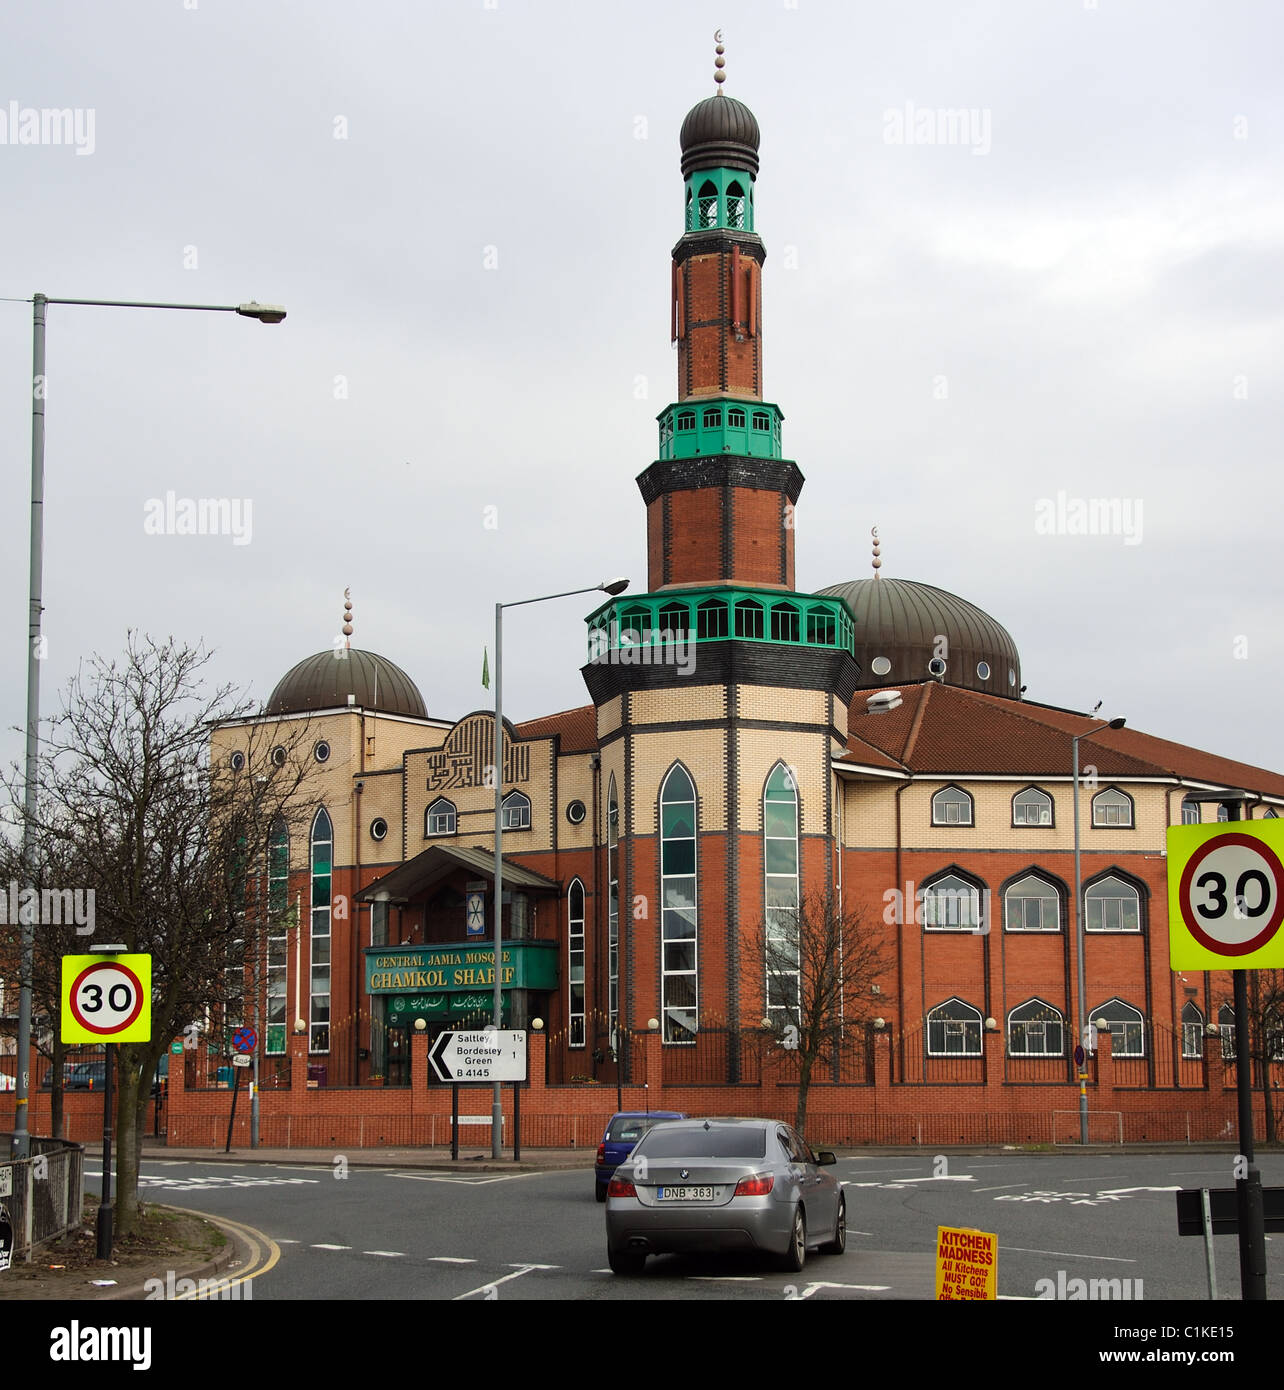 La Mosquée Jamia centrale Ghamkol Sharif immeuble sur Golden Hillock Road à Small Heath Birmingham England UK un bâtiment de trois étages Banque D'Images